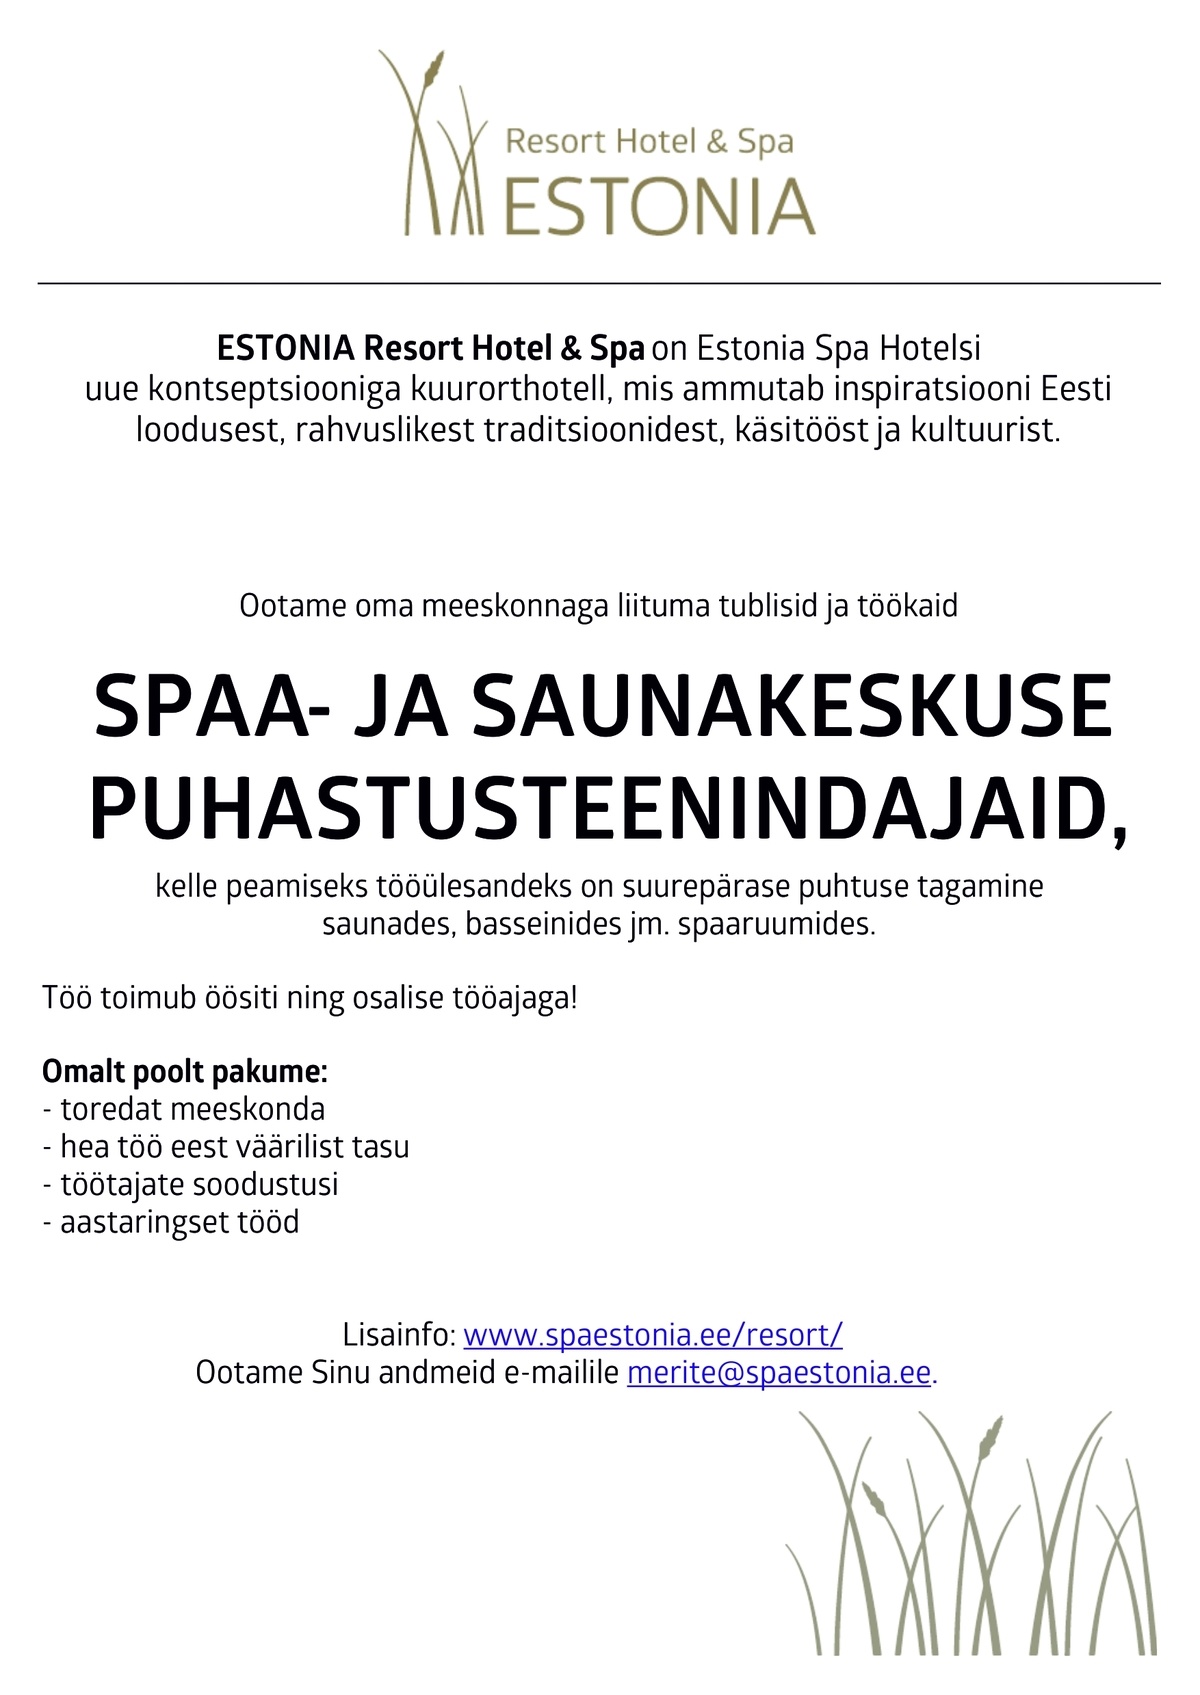 Estonia Spa Hotels AS Spaa- ja saunakeskuse puhastusteenindaja